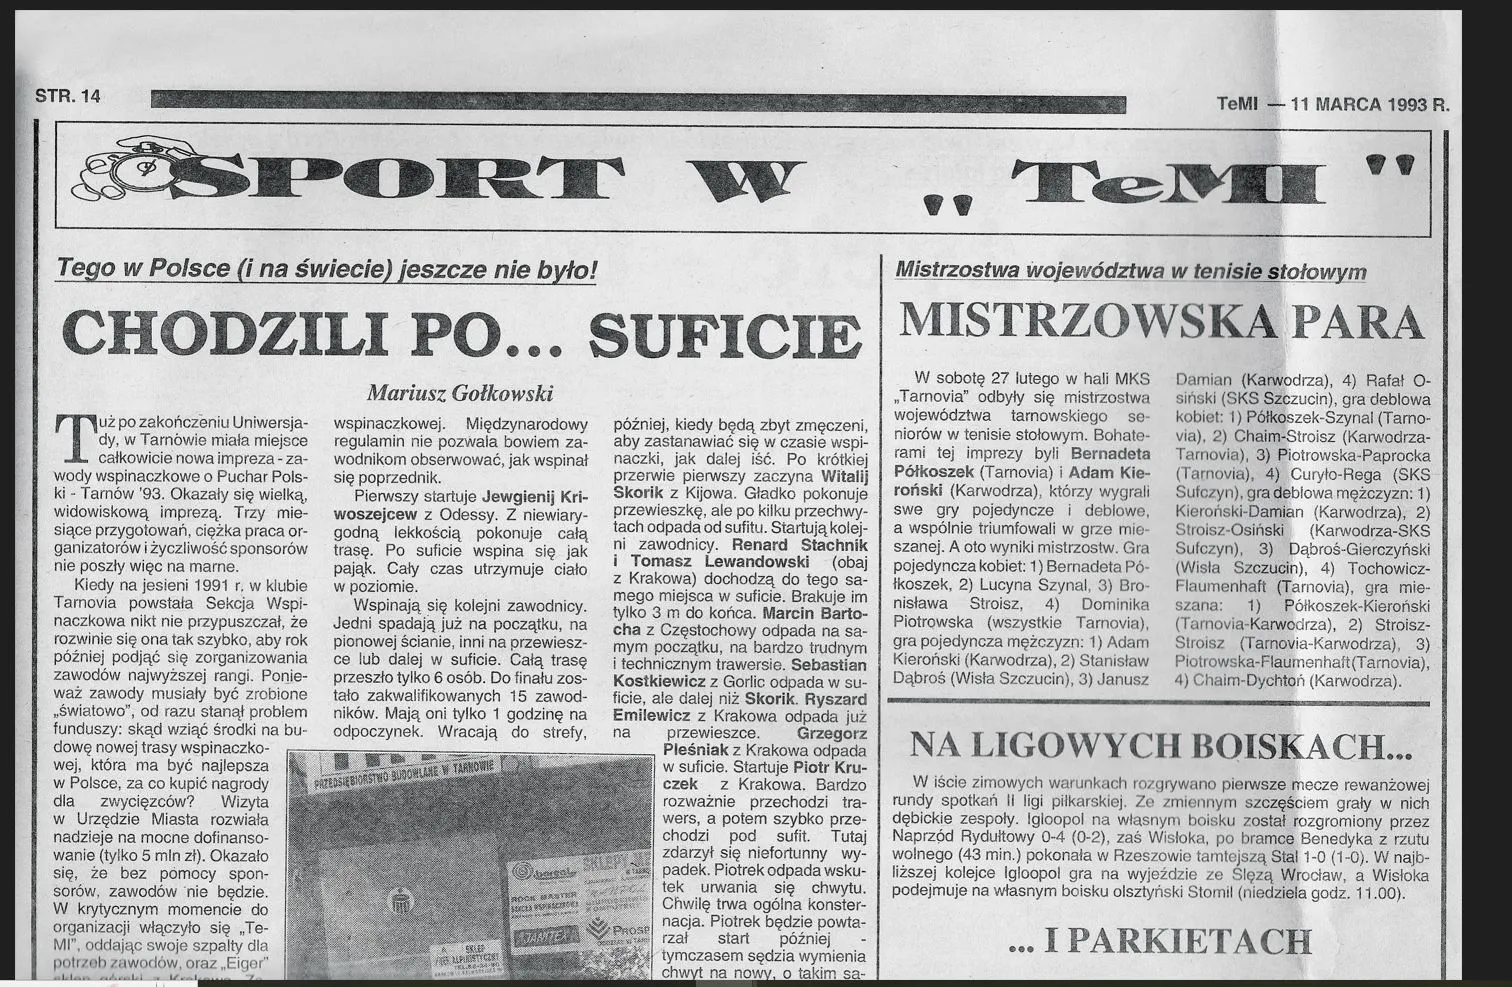 30 lat temu ROCK MASTER zorganizowało pierwsze Halowe Zawody Wspinaczkowe na trudność o Puchar Polski